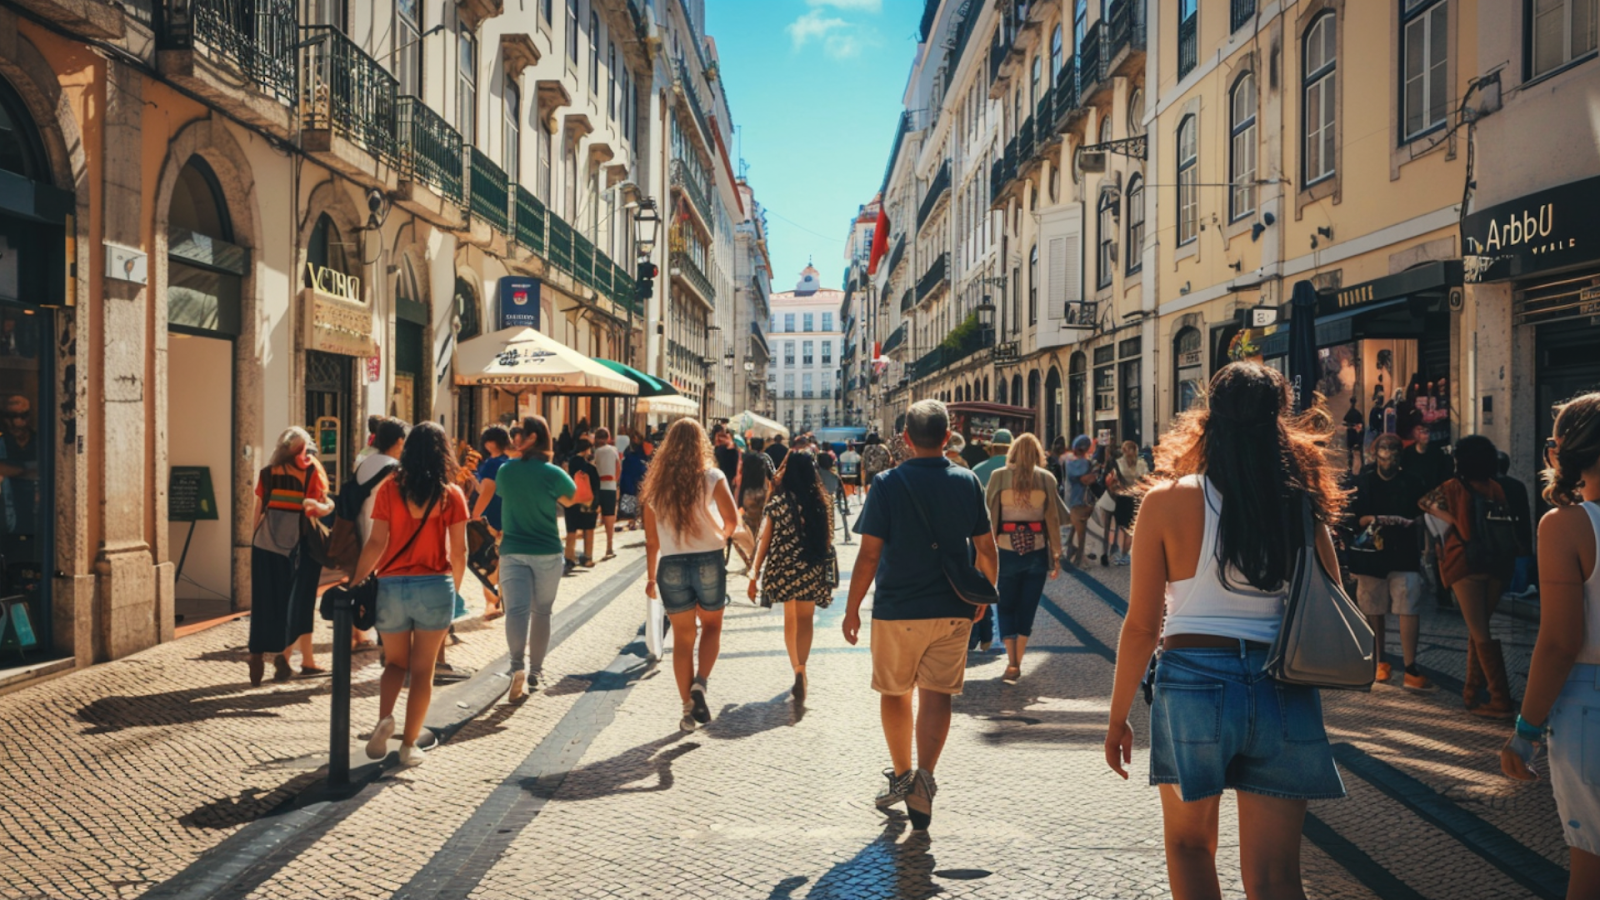 People walking along the street in Lisbon